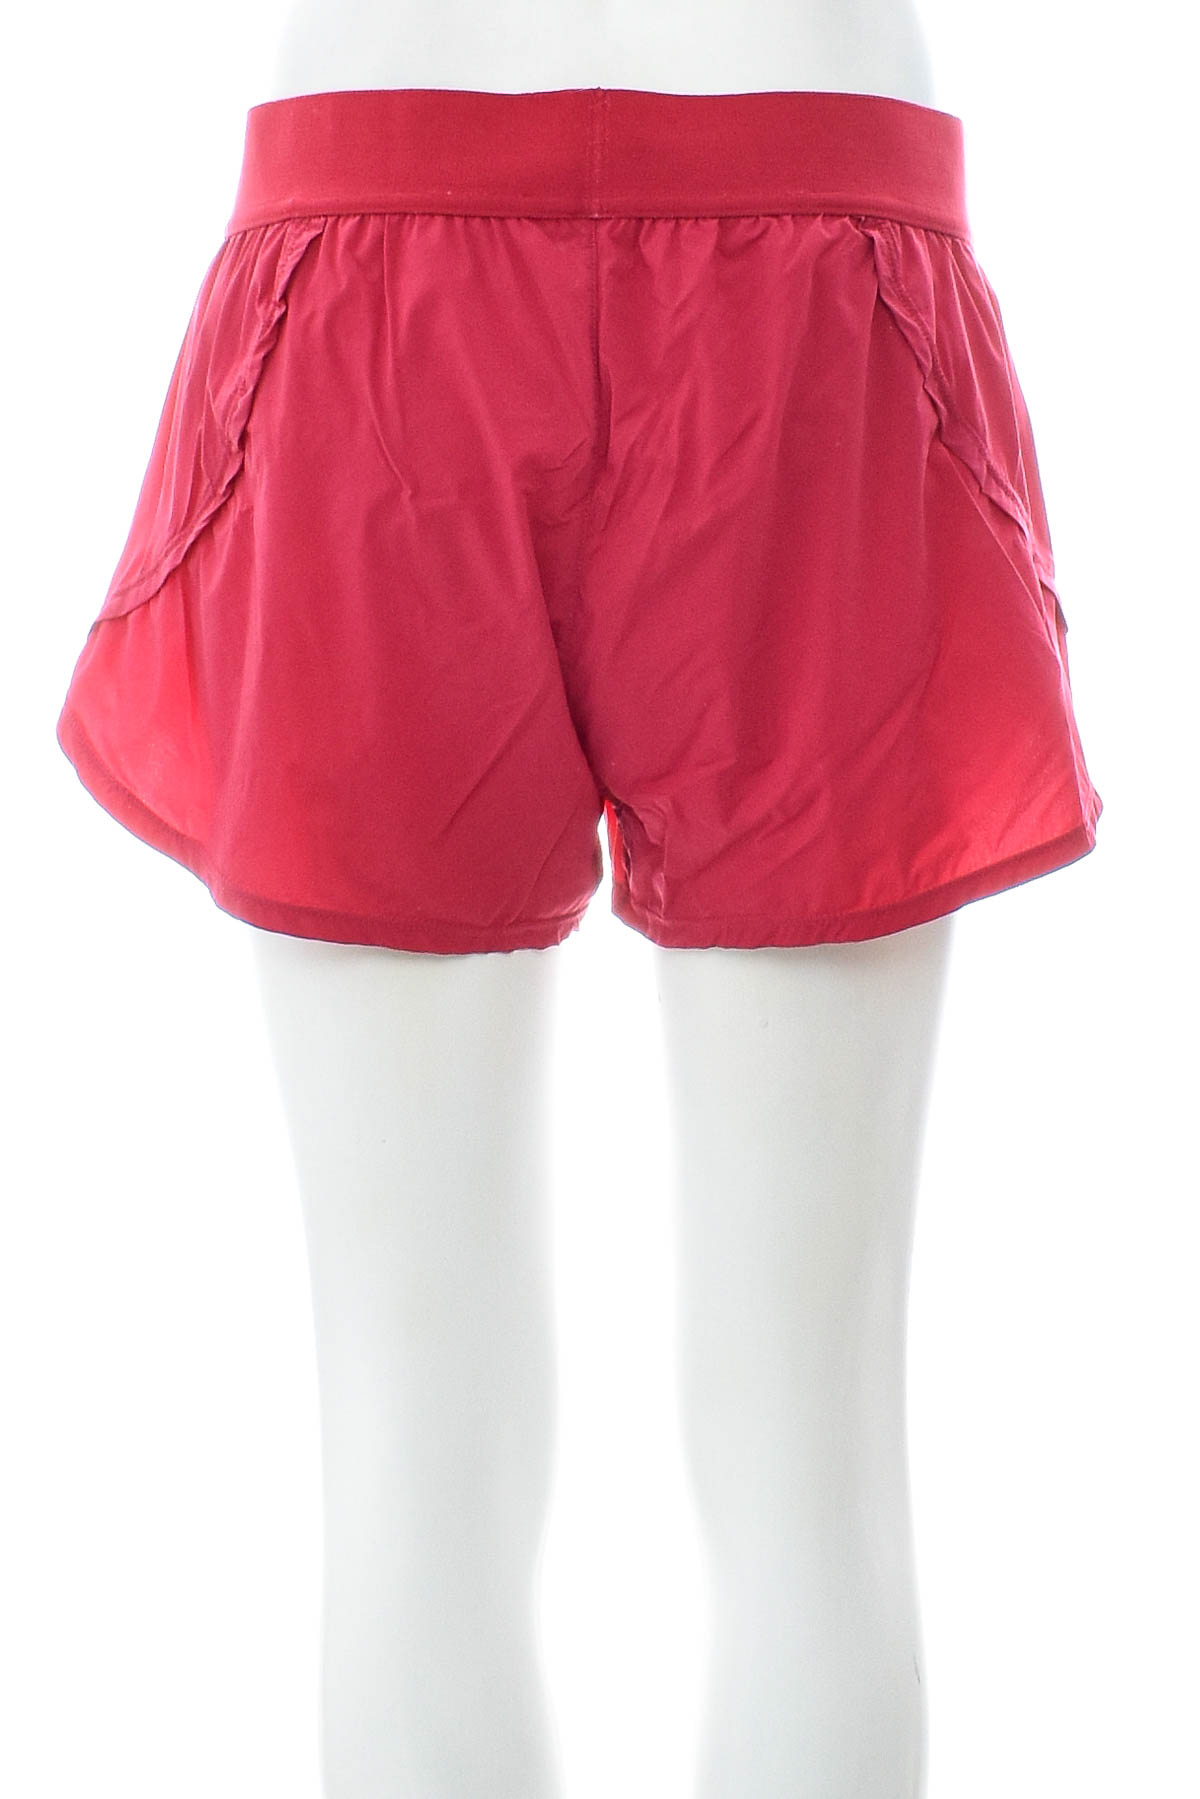 Women's shorts - ROXY - 1